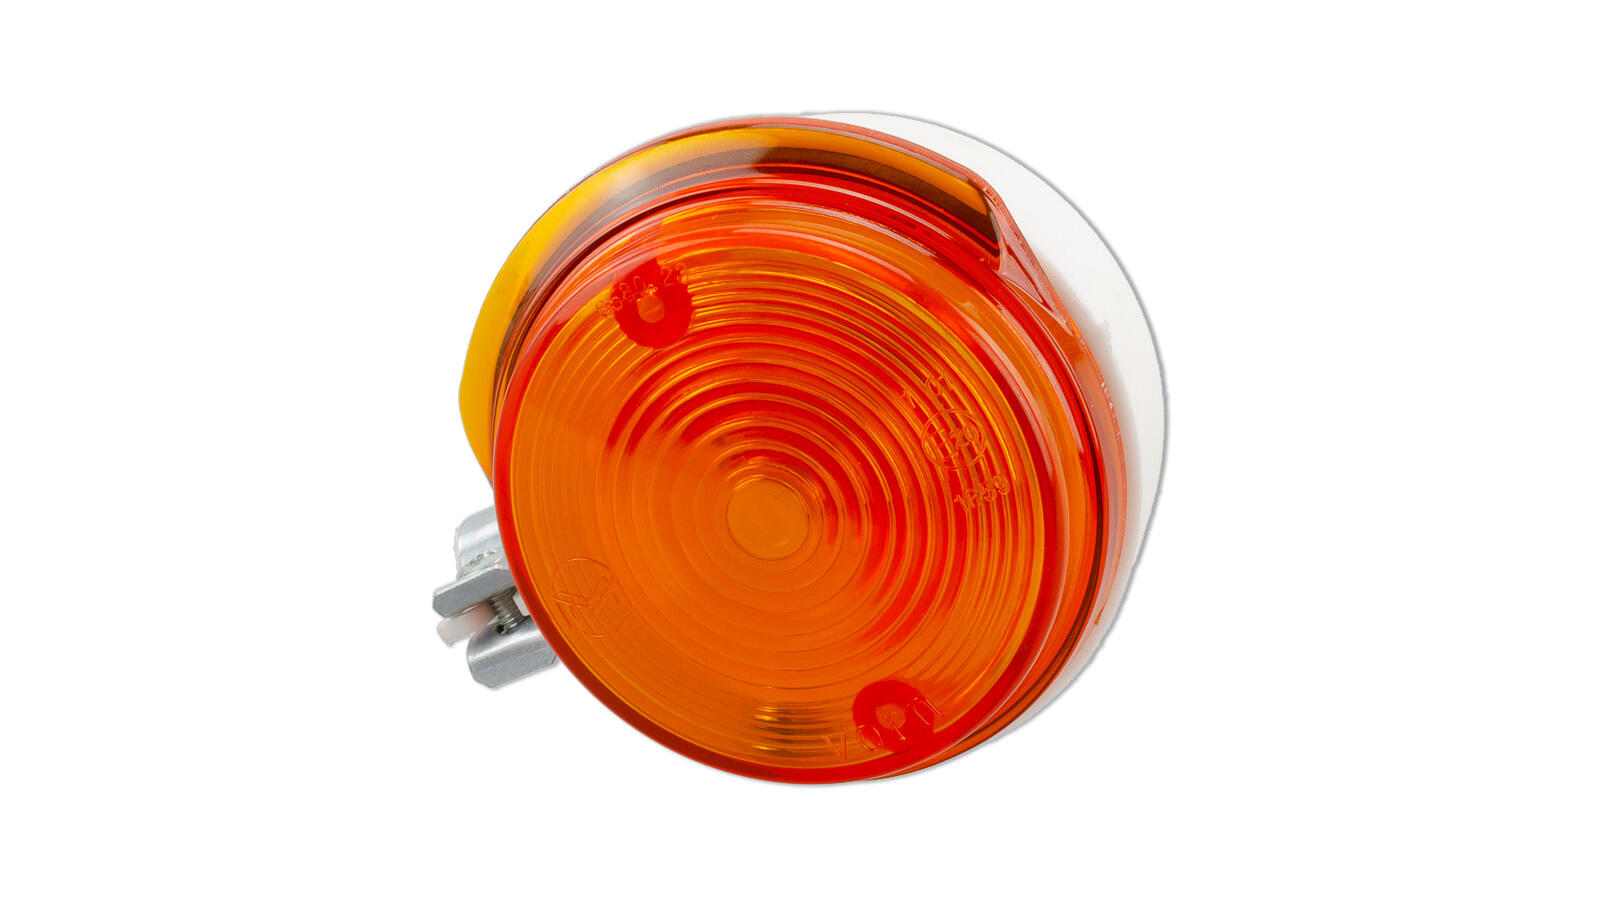 Blinker vorn rund weiß/orange S50, S51, SR50, ETZ, TS (E-geprüft), 8,50 €